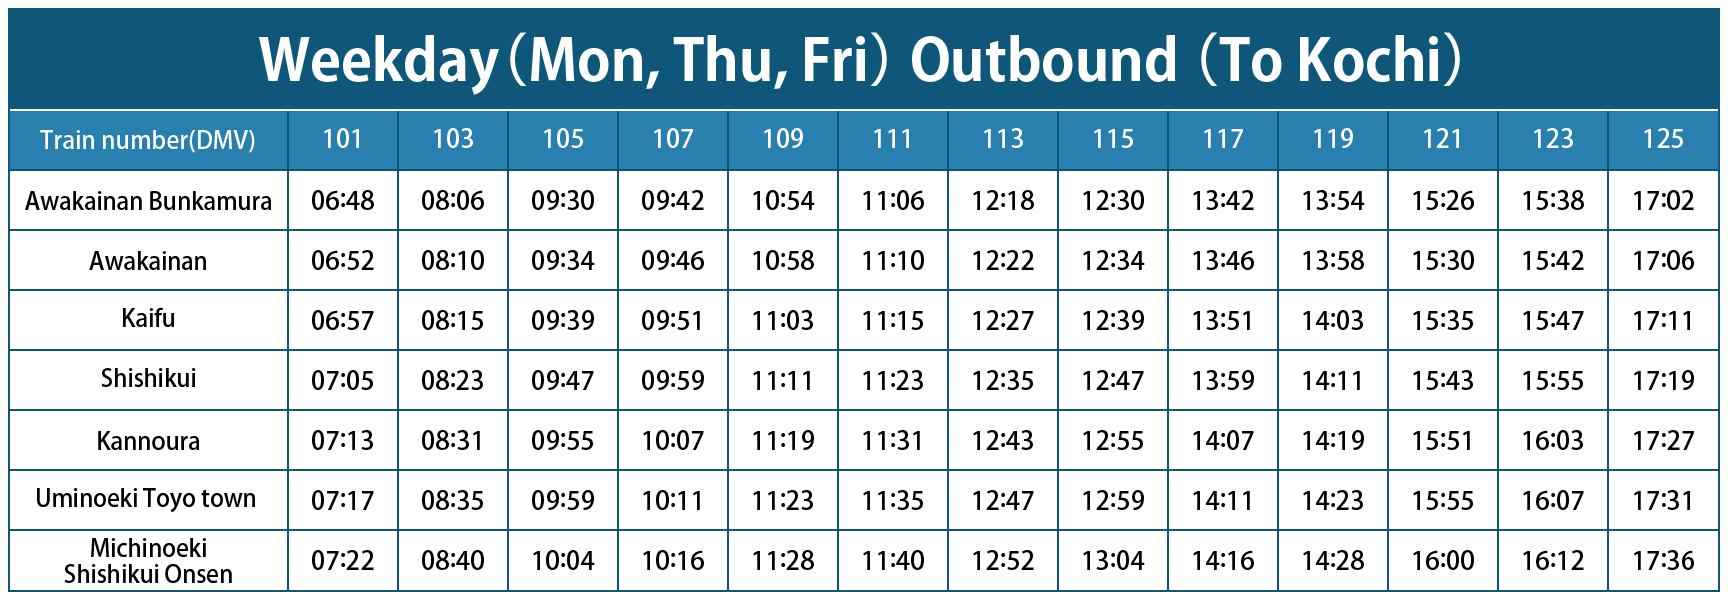 Timetable Weekday (on, Thu, Fri) Outbound (To Kochi)